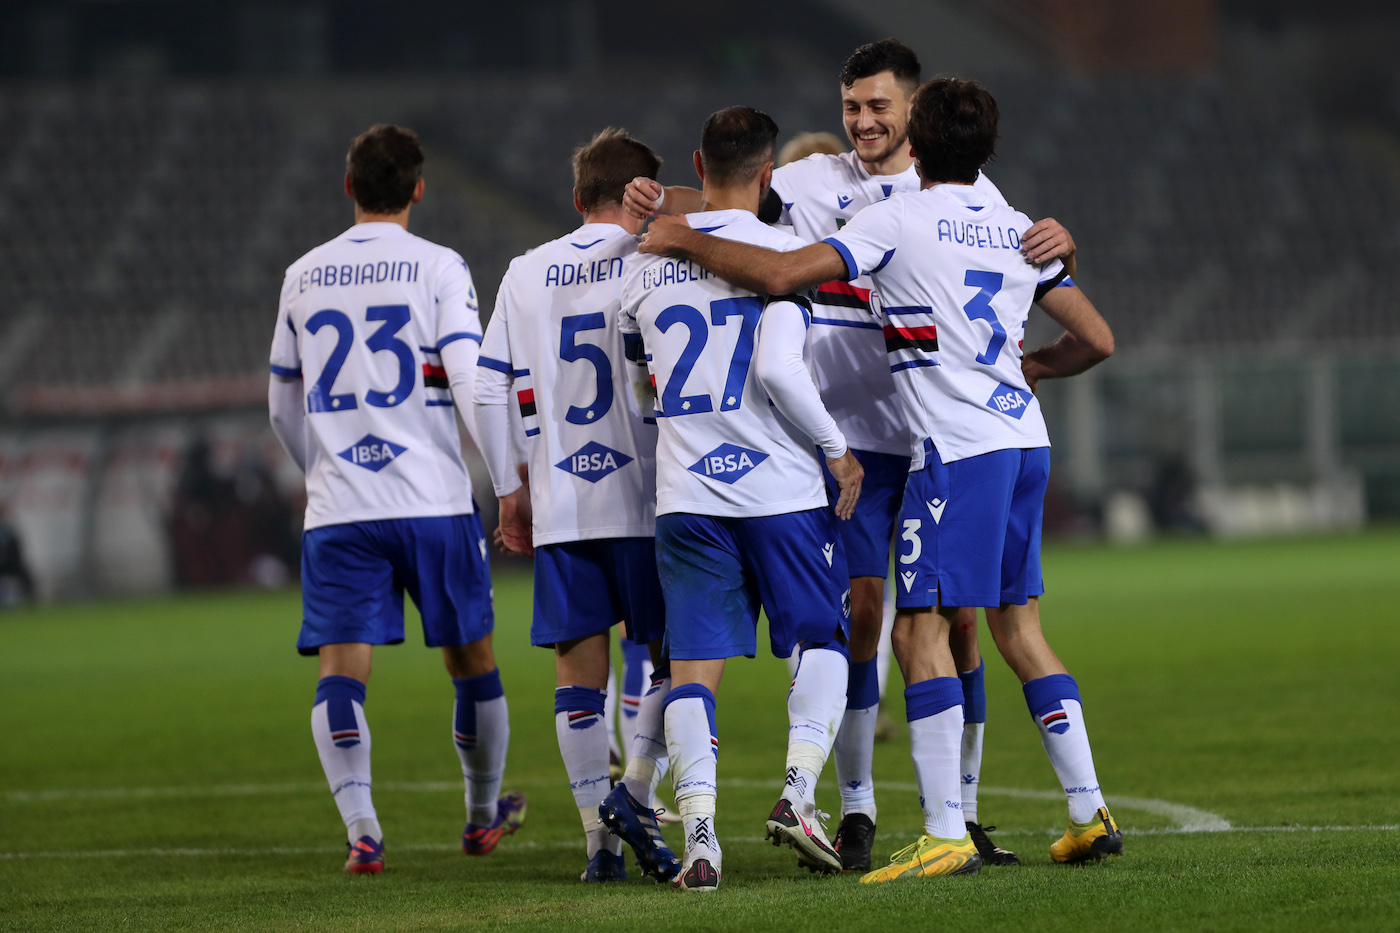 Serie A, i posticipi della 9a giornata: Torino-Sampdoria 2-2 e Genoa-Parma 1-2